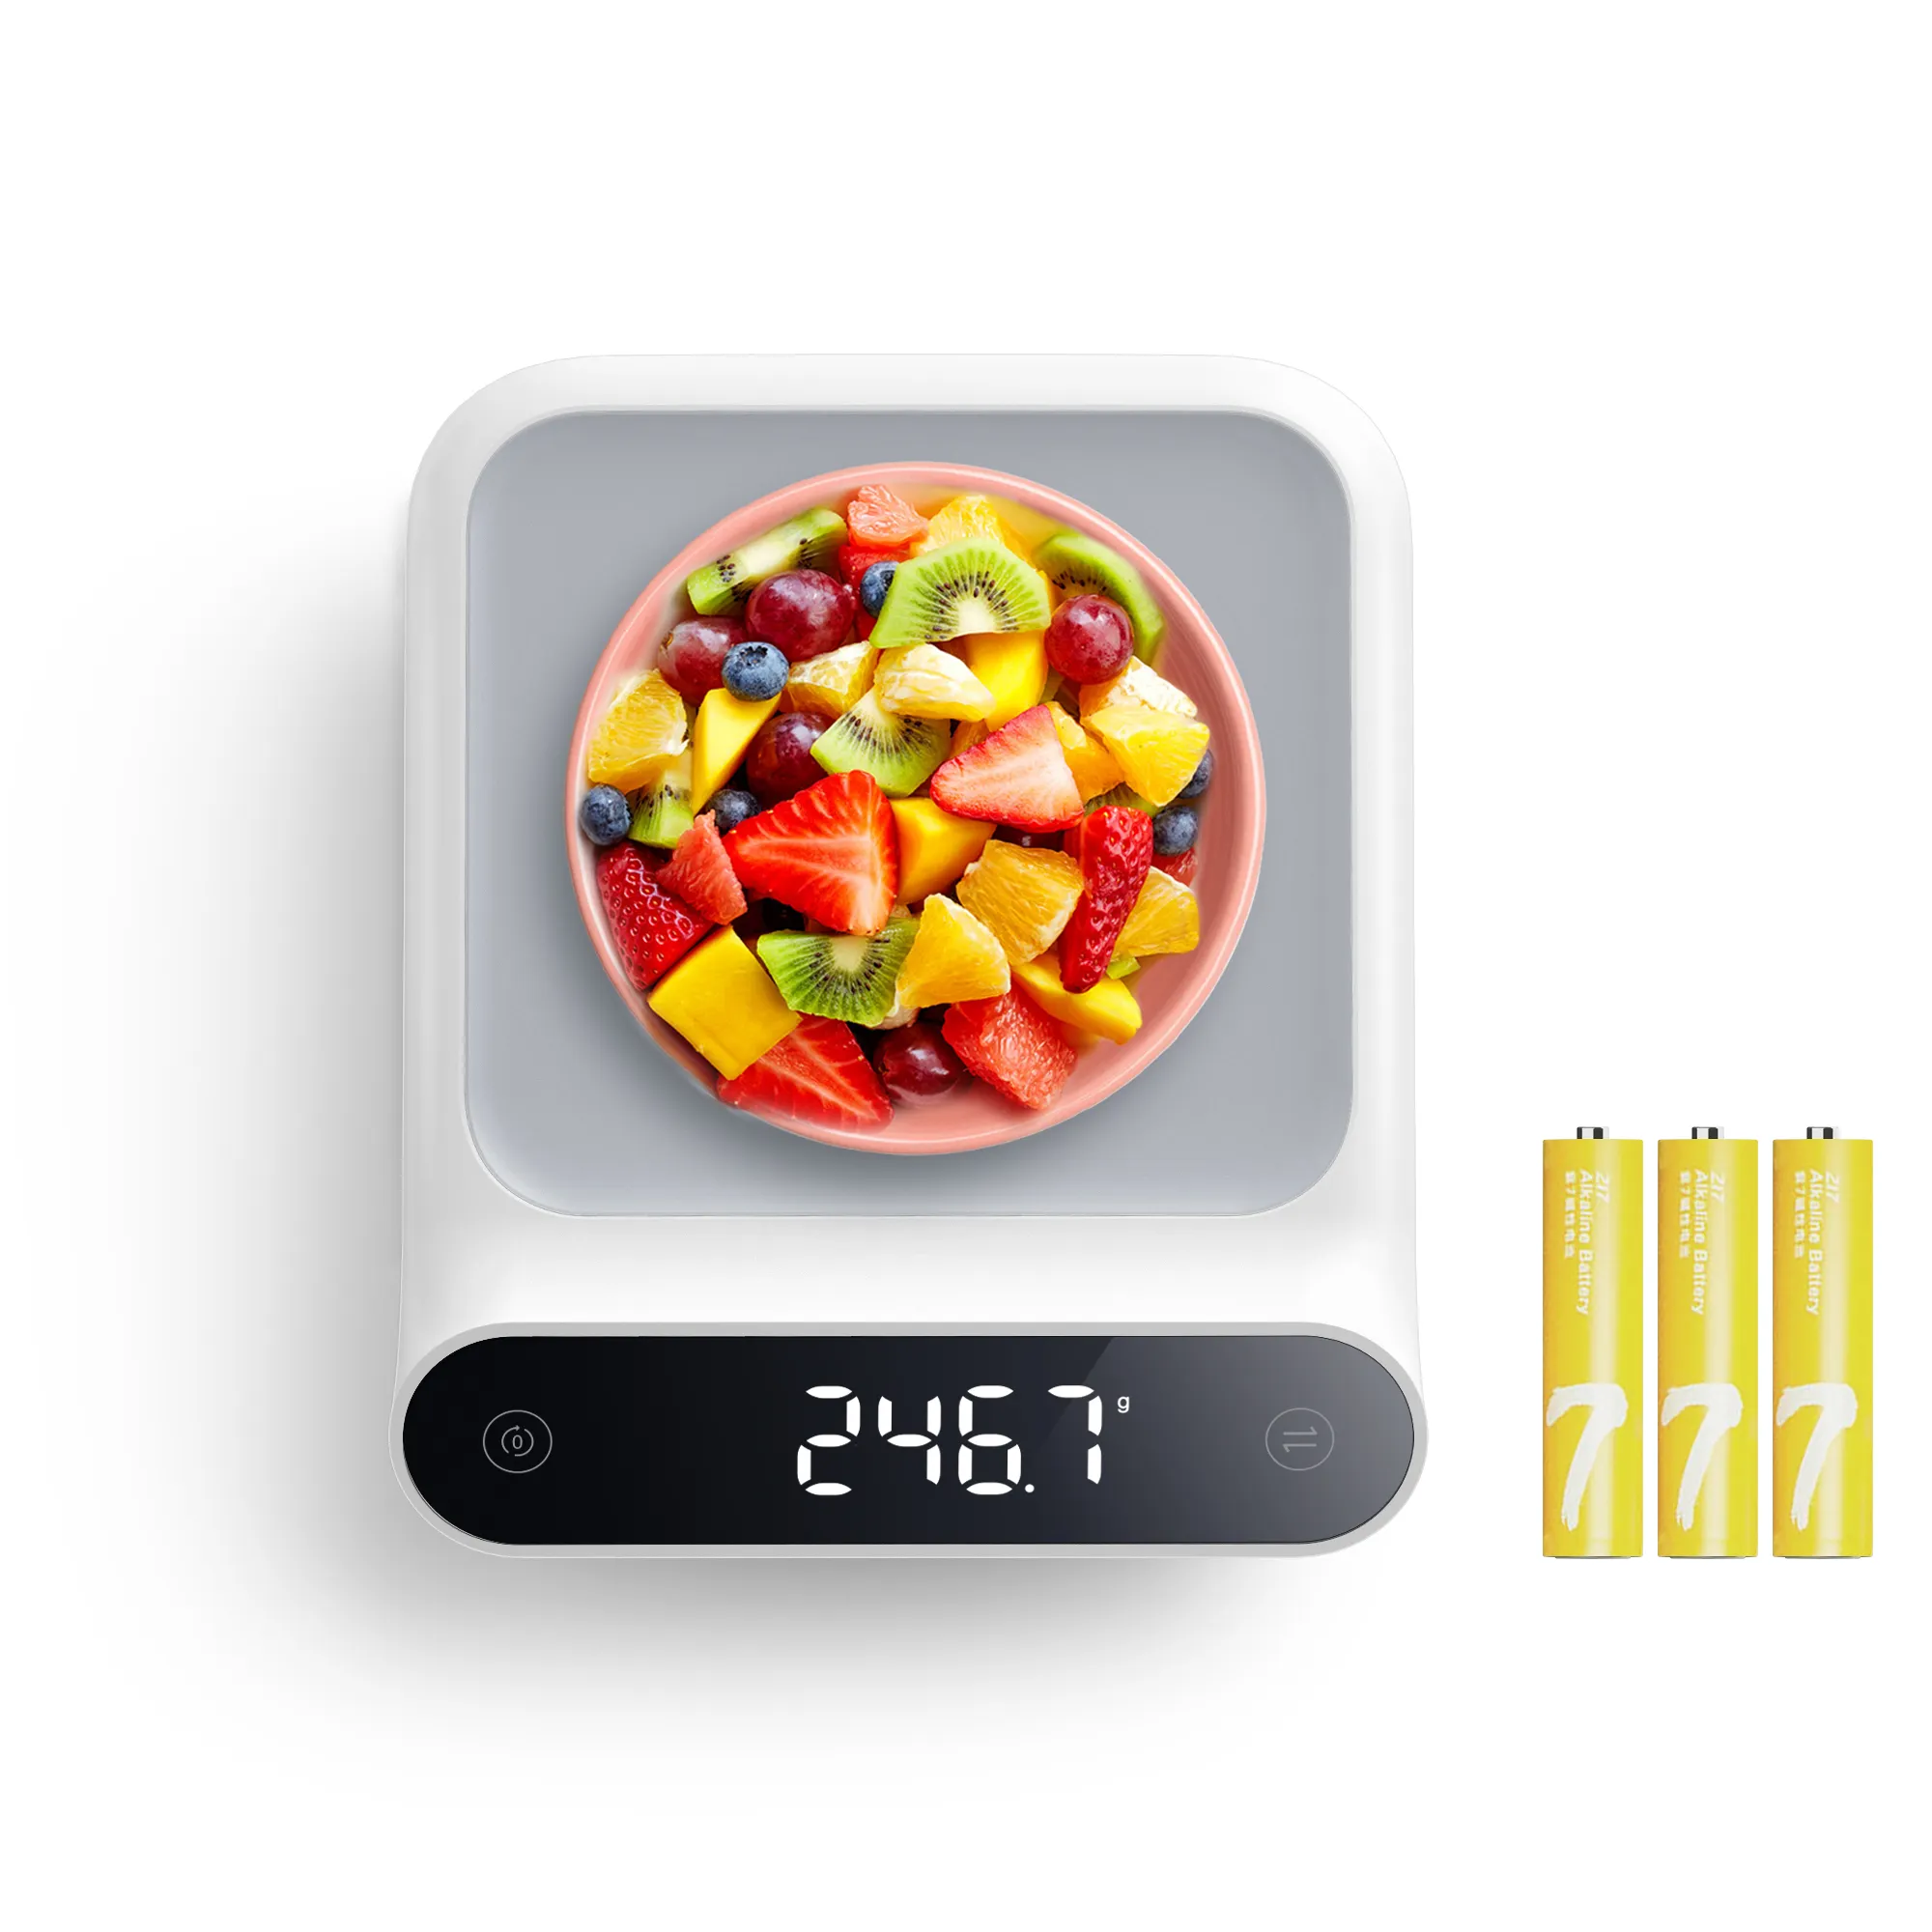 Neue Küchengeräte und Geräte 2021 Haushalt 5kg elektronische Plattform waage Digitale Waage Lebensmittel Küchen waage